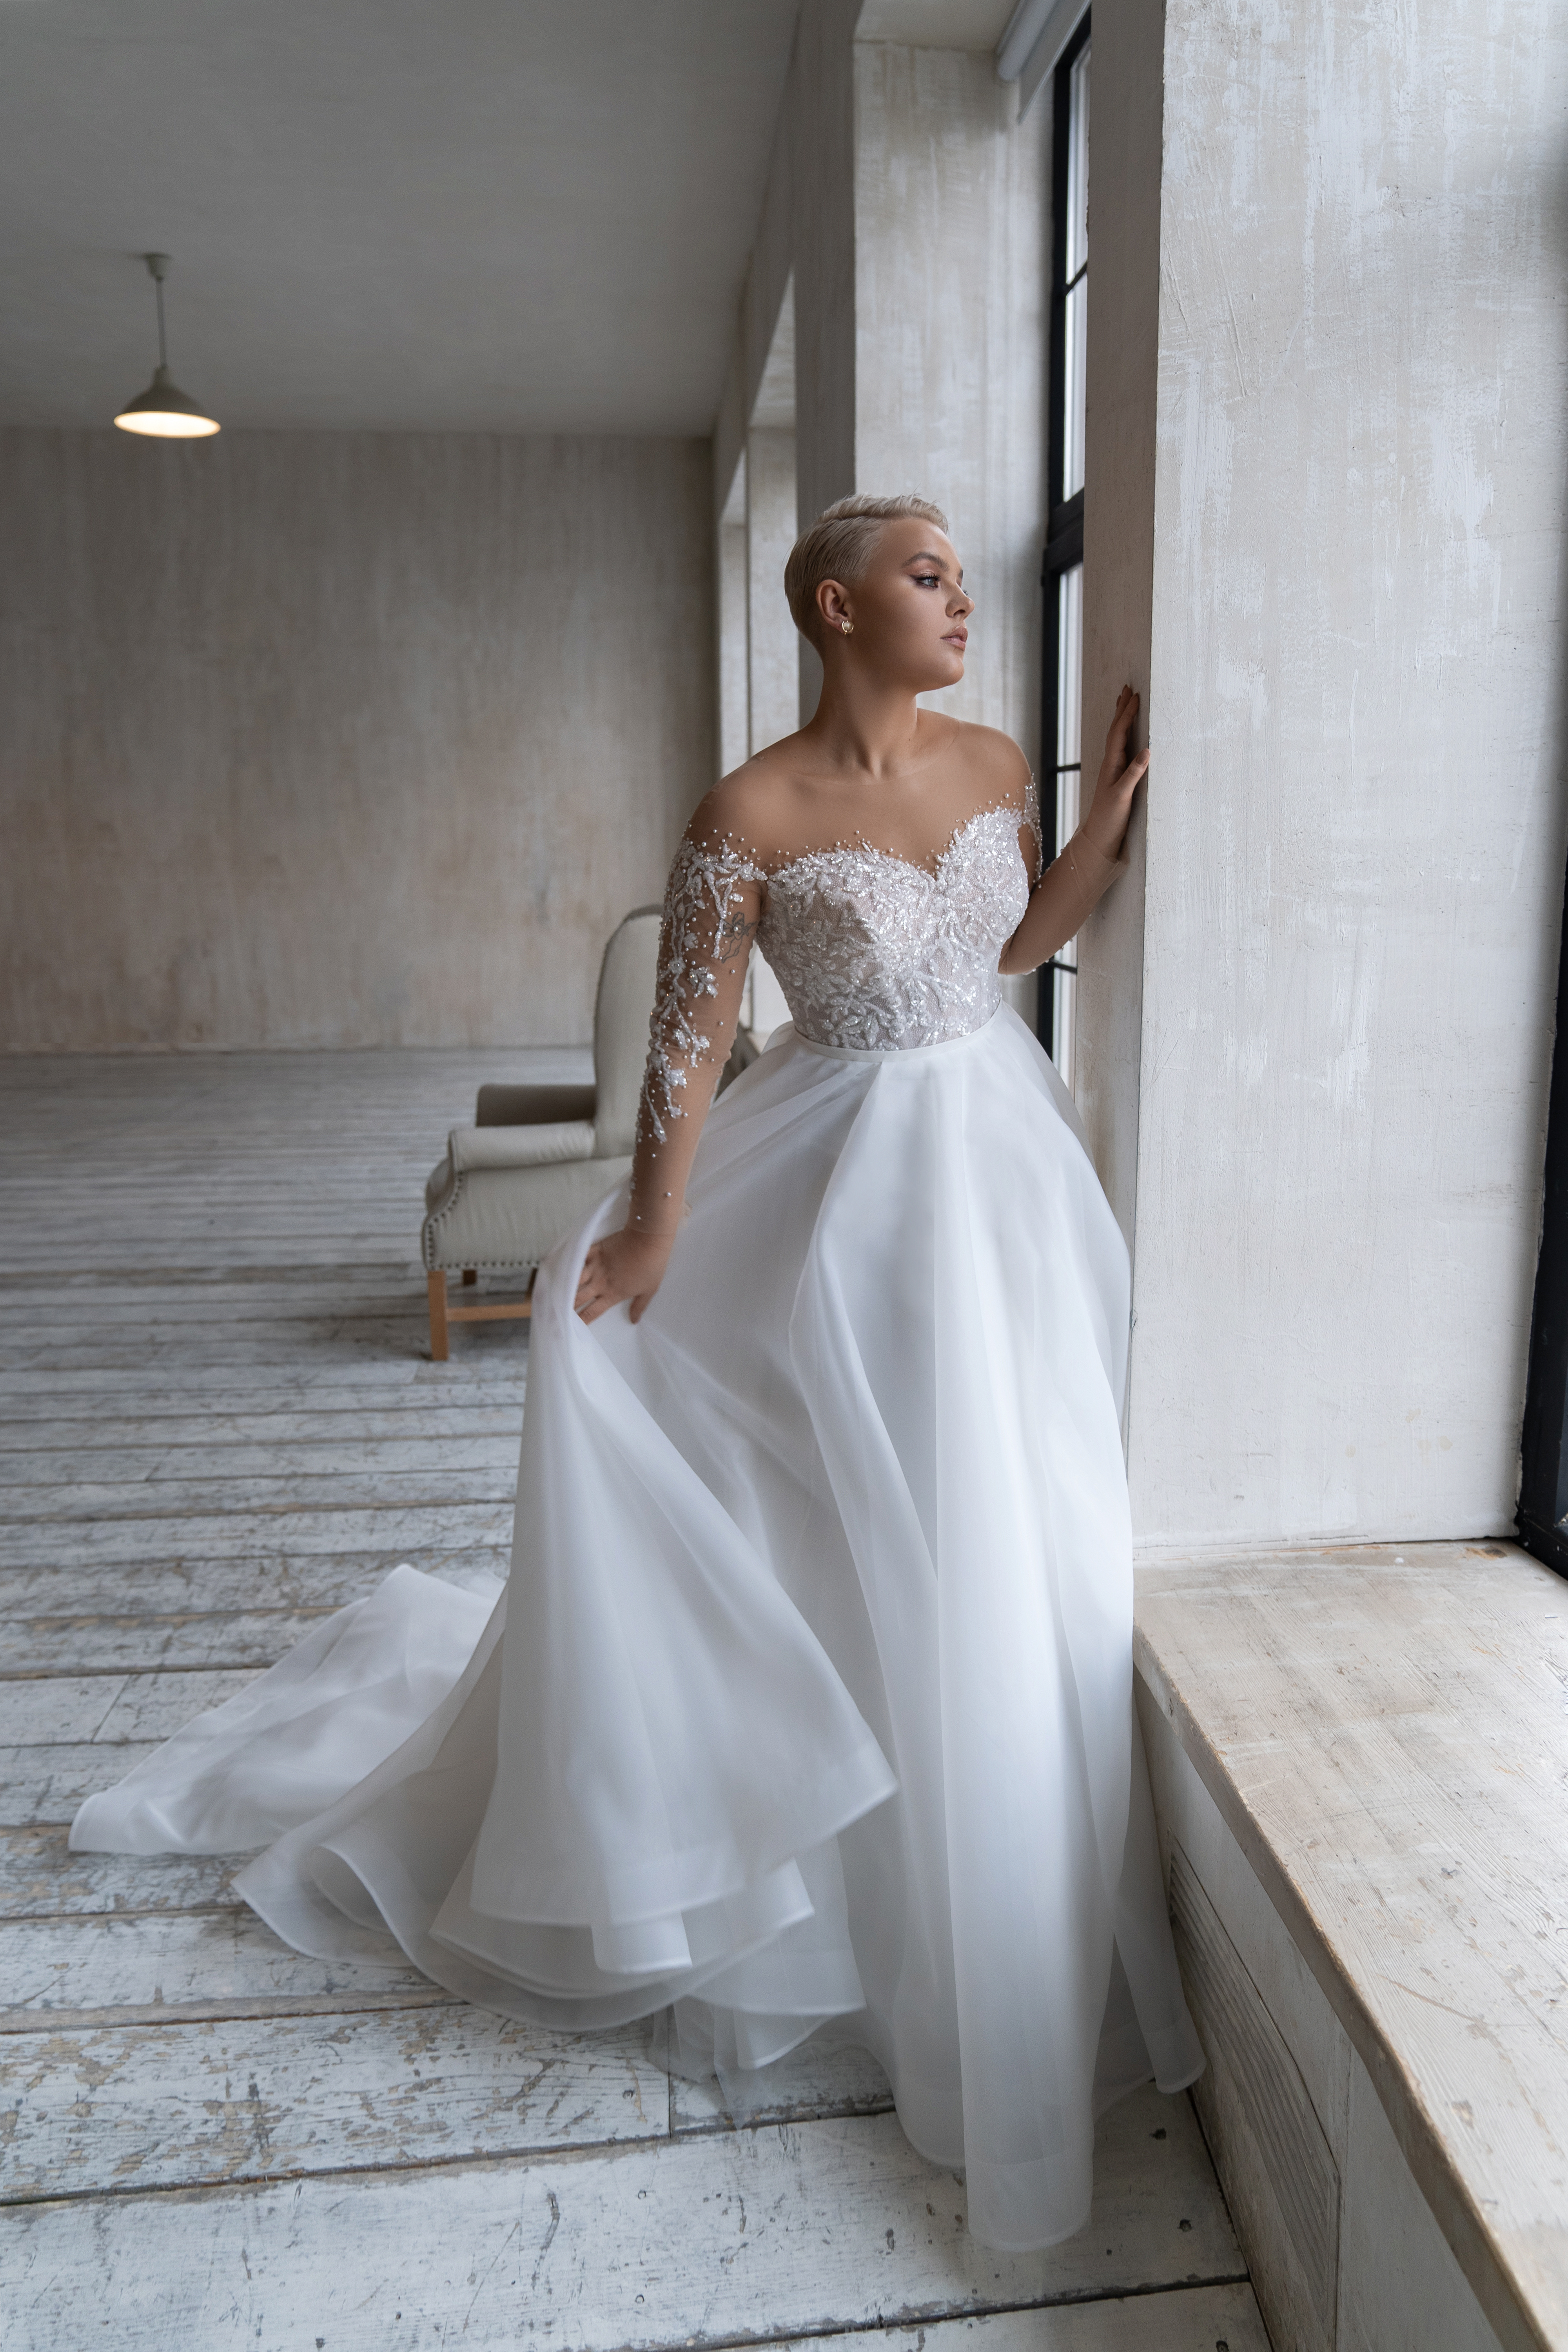 Купить свадебное платье «Киара плюс сайз» Натальи Романовой из коллекции 2021 в салоне «Мэри Трюфель»